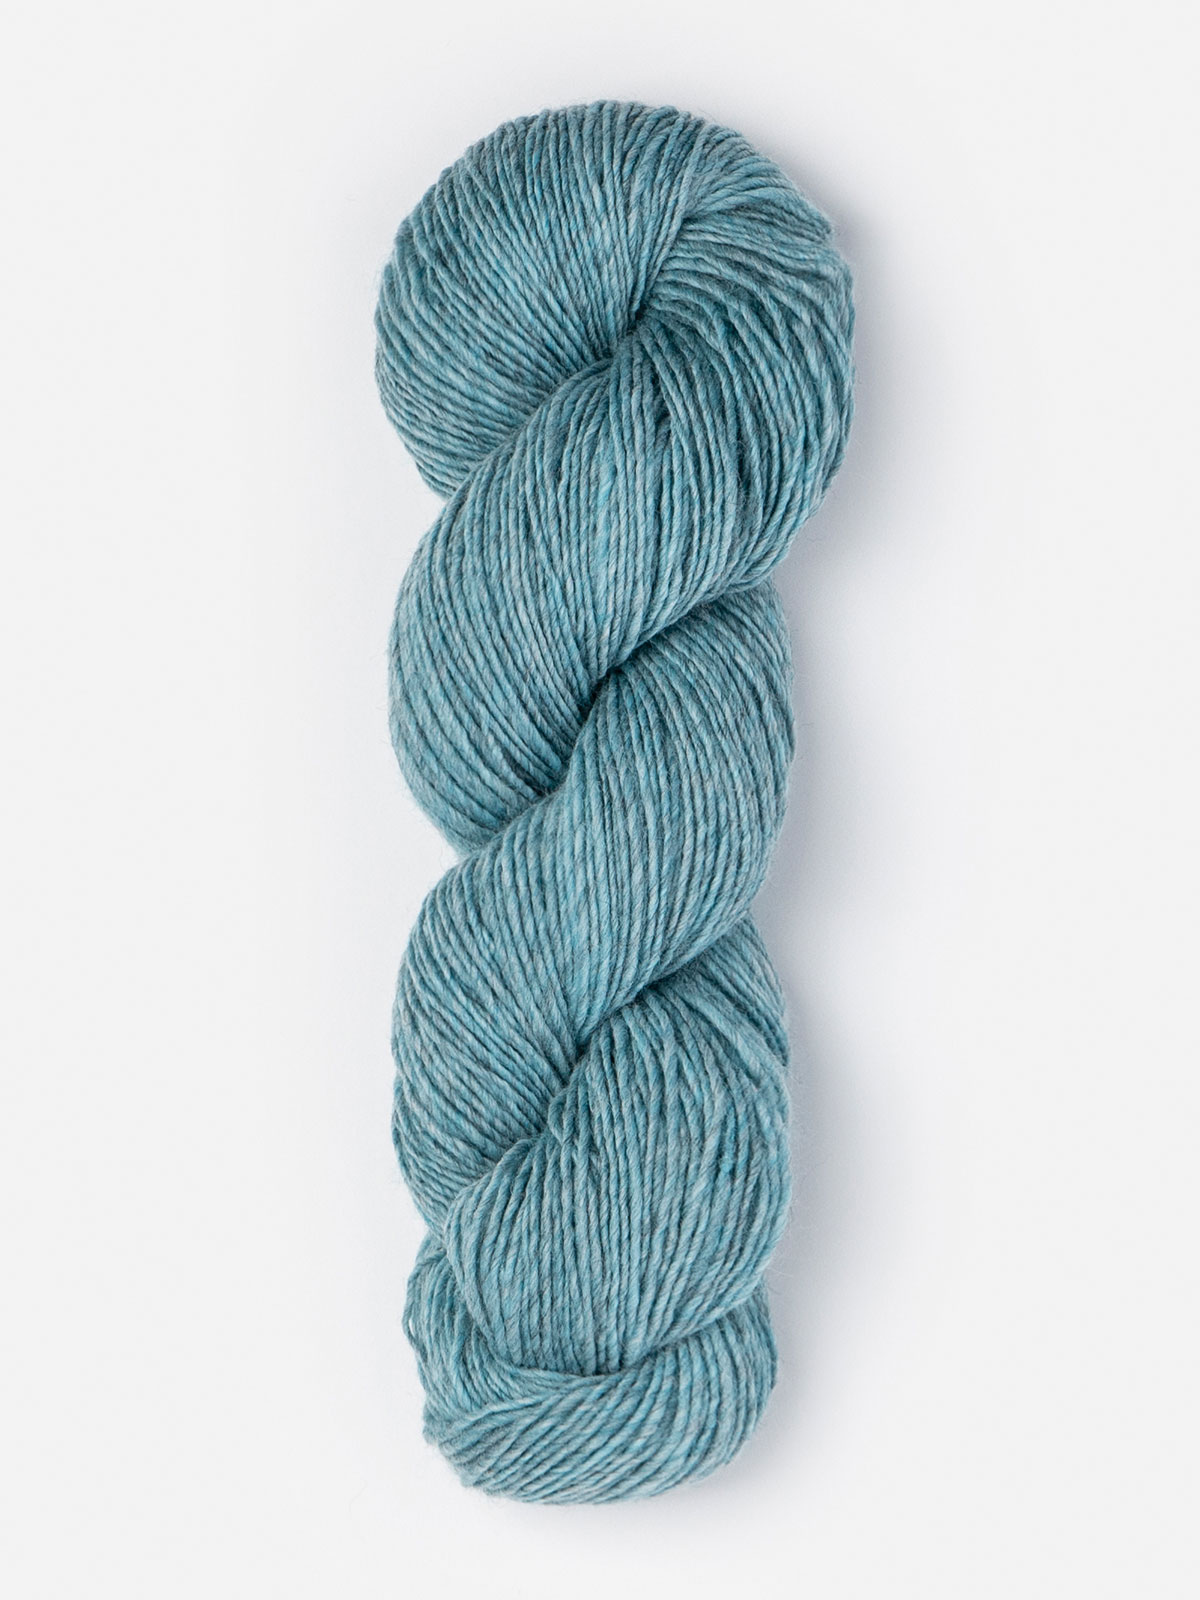 Blue Sky Fibers Alpaca Silk Yarn at Fabulous Yarn